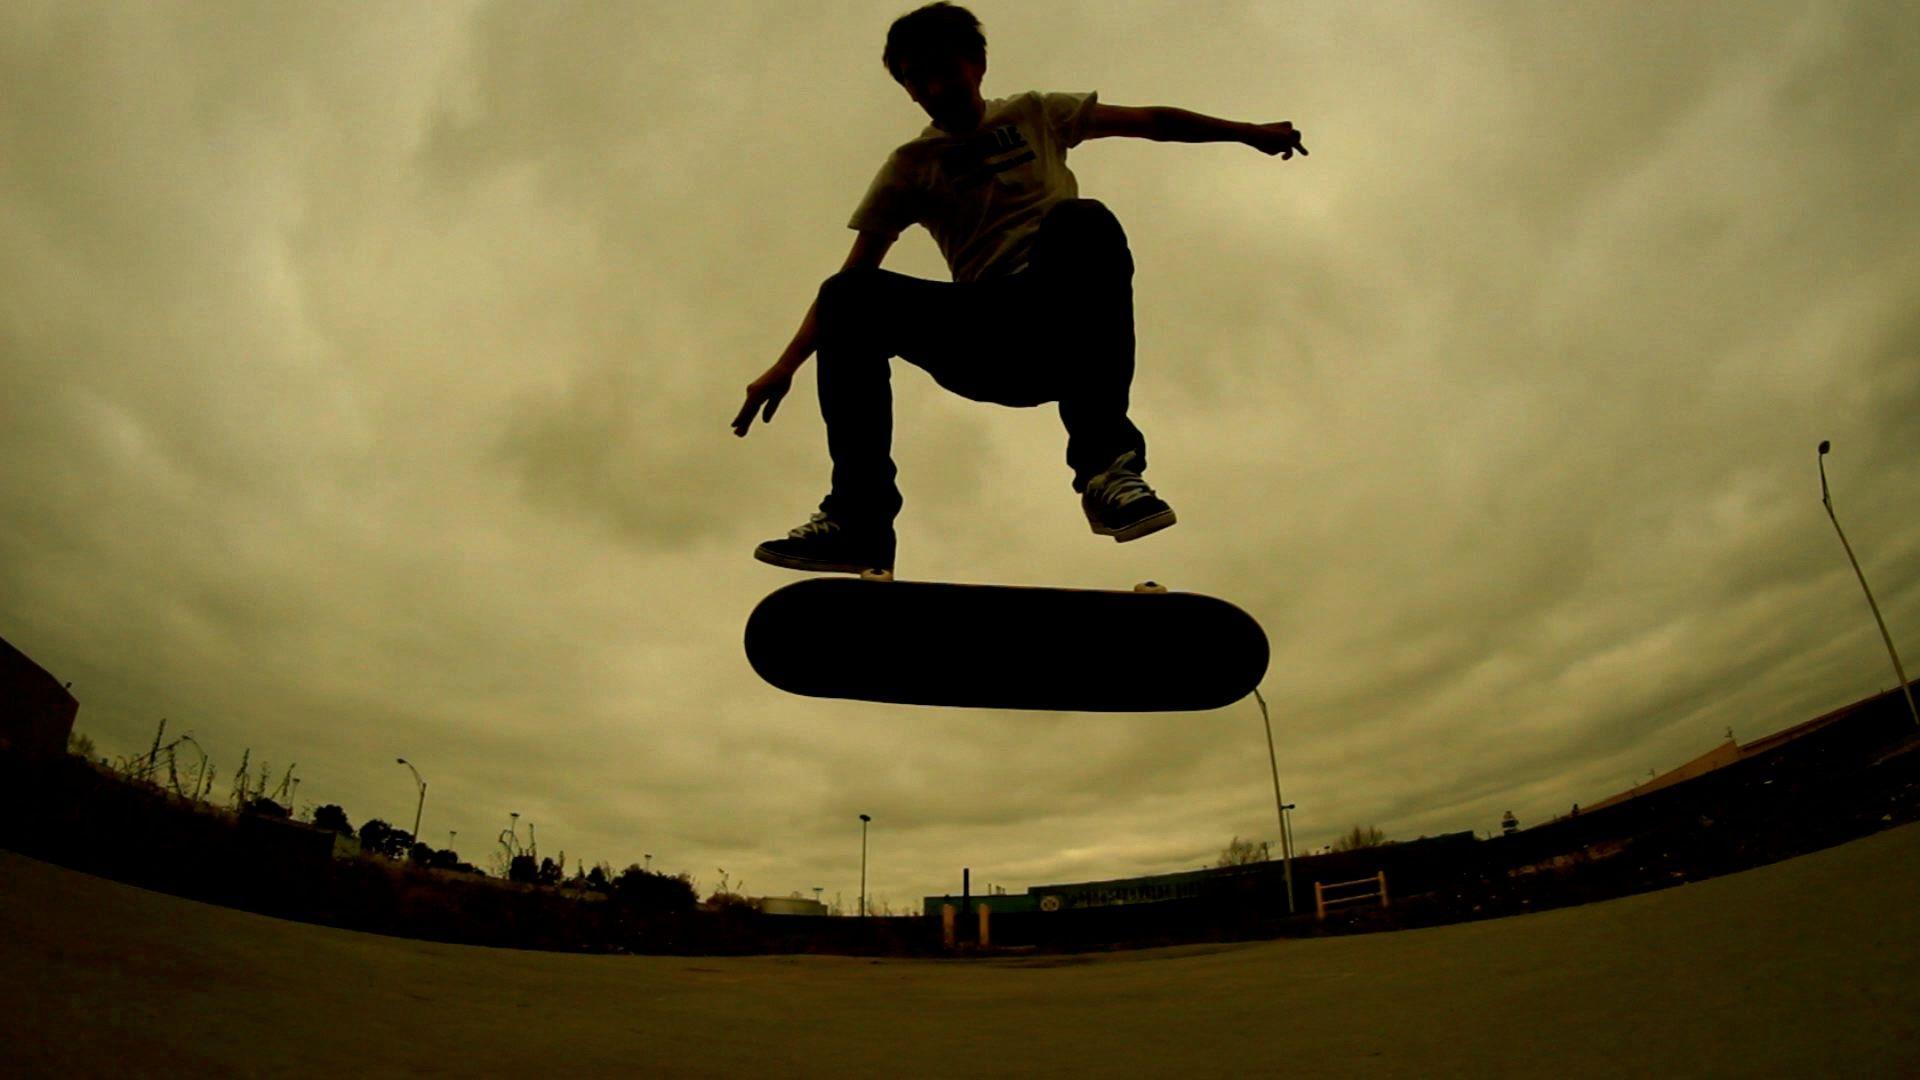 xboard skate